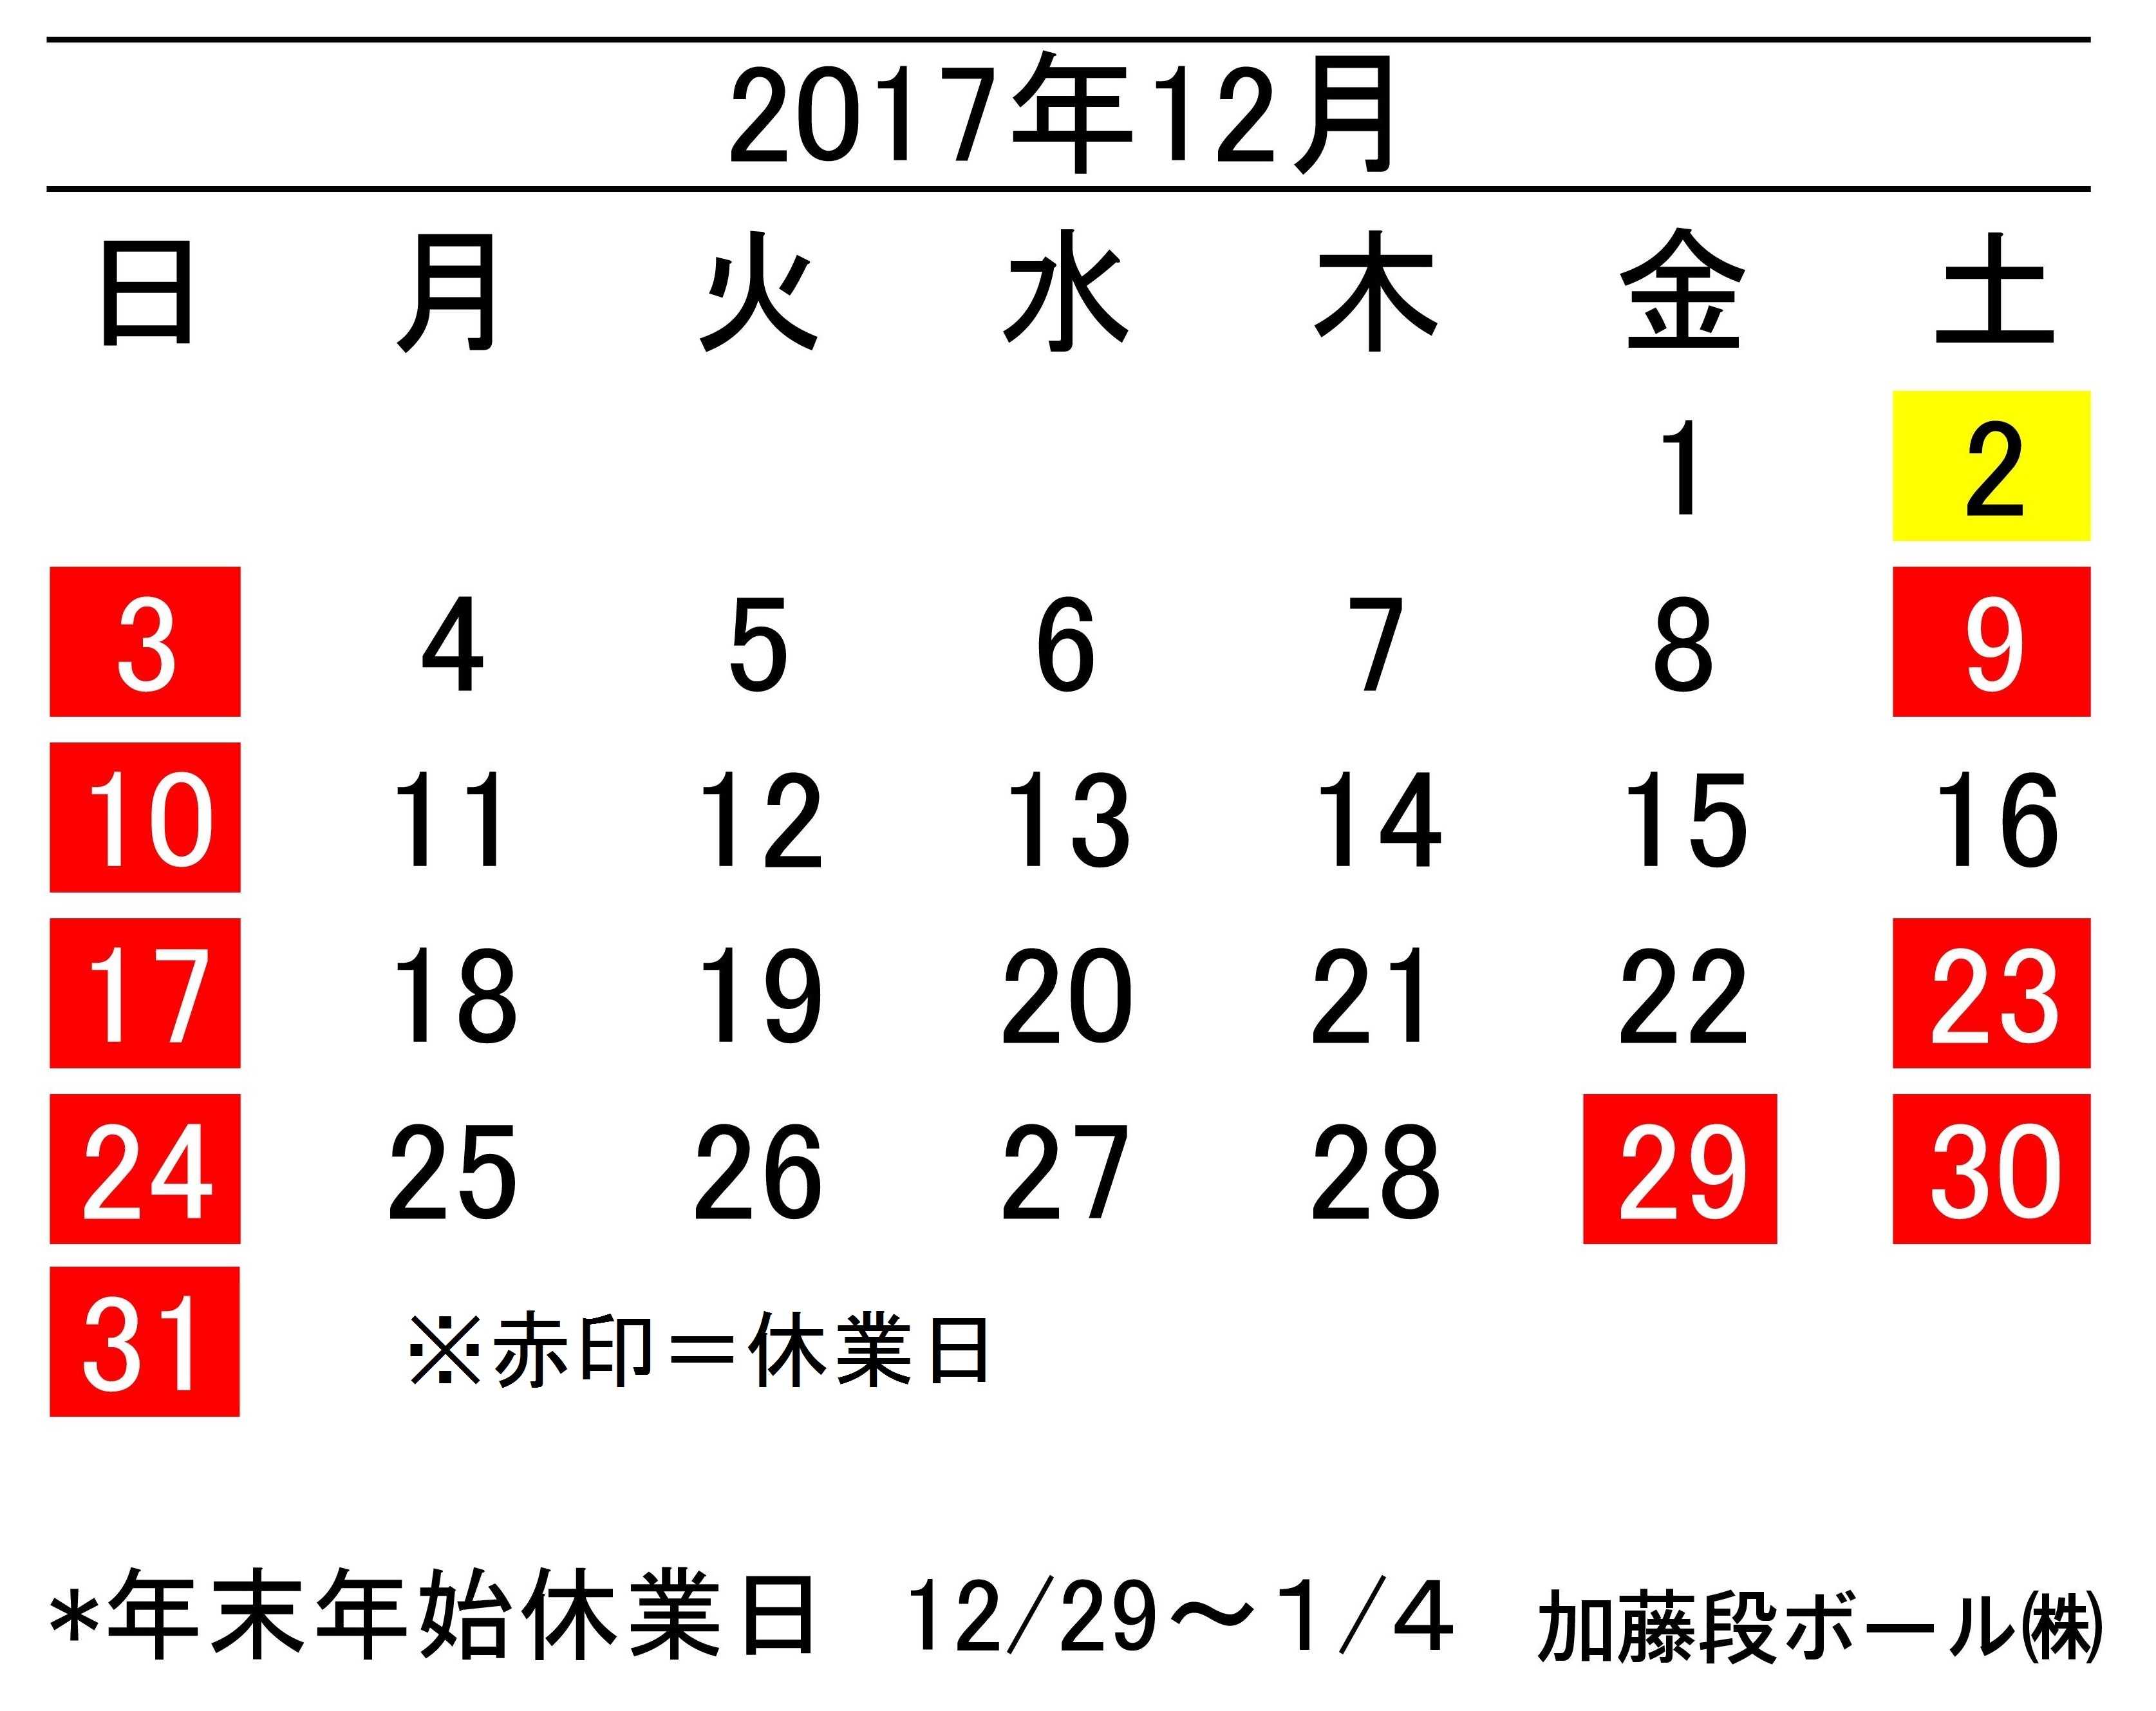 2017年12月度営業日カレンダー 加藤段ボール株式会社 千葉 福島 神奈川を中心に段ボール製品 梱包資材の製造と販売